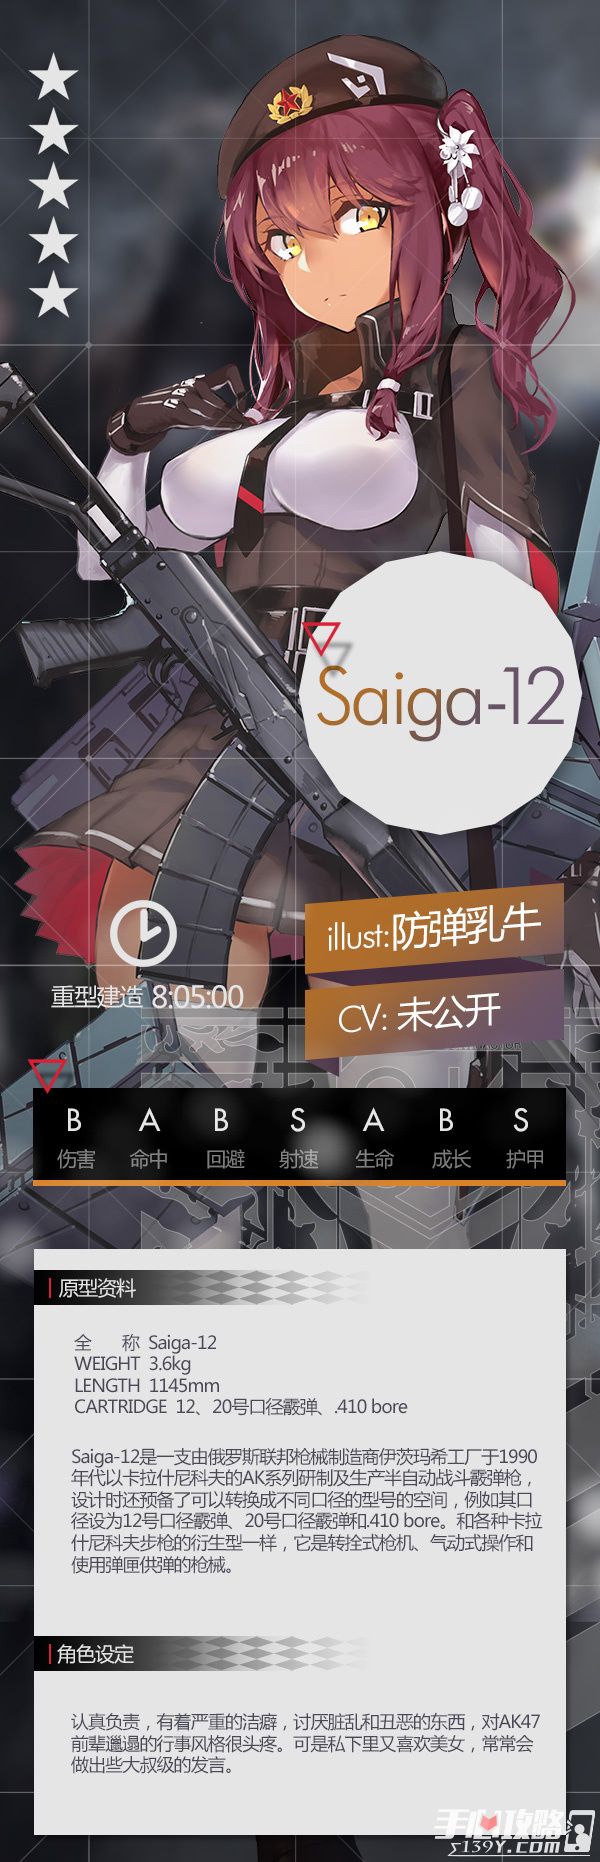 《少女前线》霰弹人形“Saiga-12”介绍1